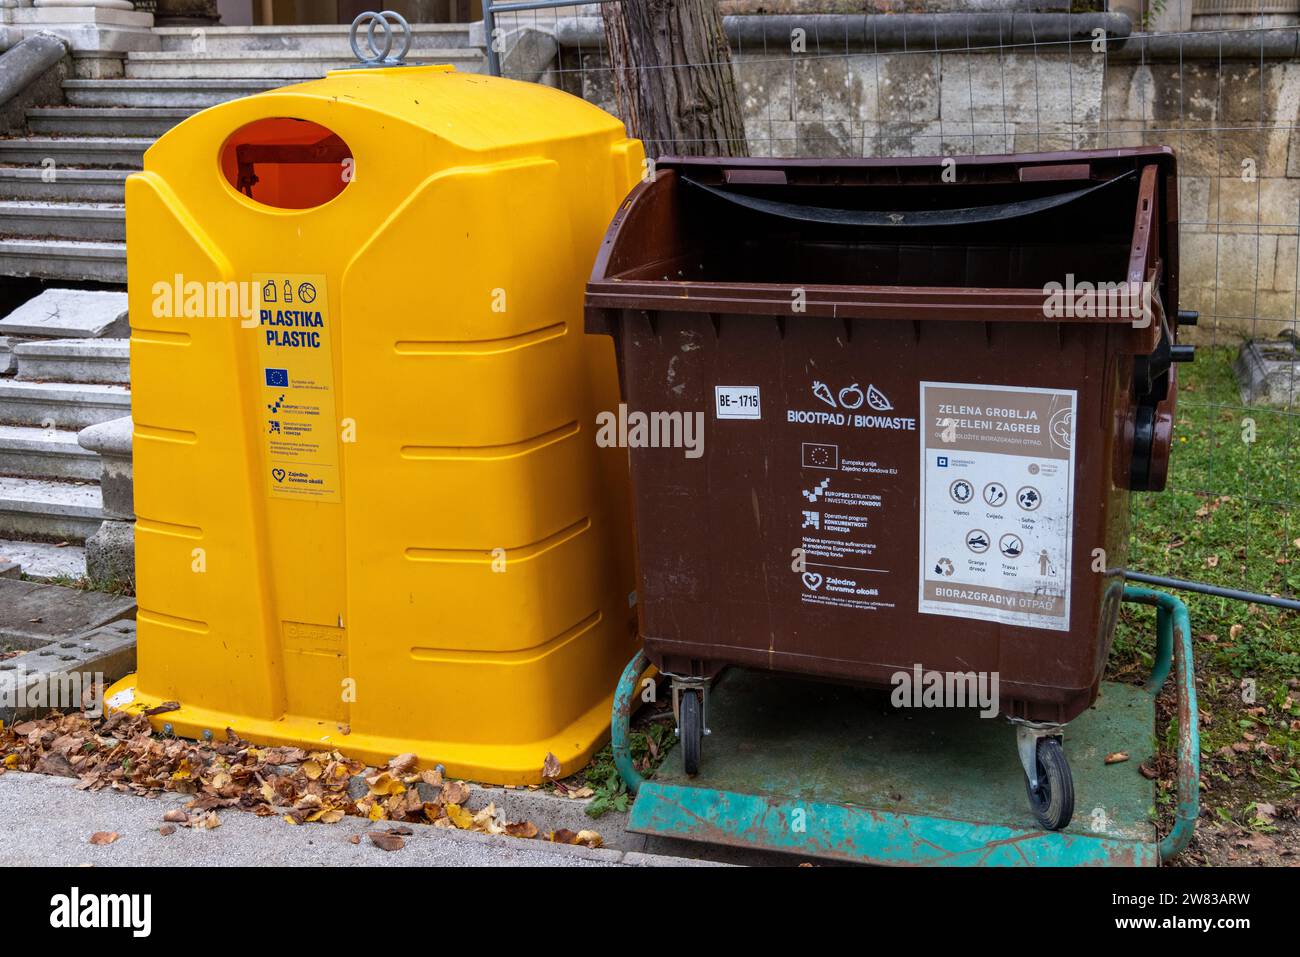 Contenitori per il riciclaggio: Contenitore giallo per il riciclaggio di plastica e contenitore verde per il riciclaggio di prodotti biologici Foto Stock